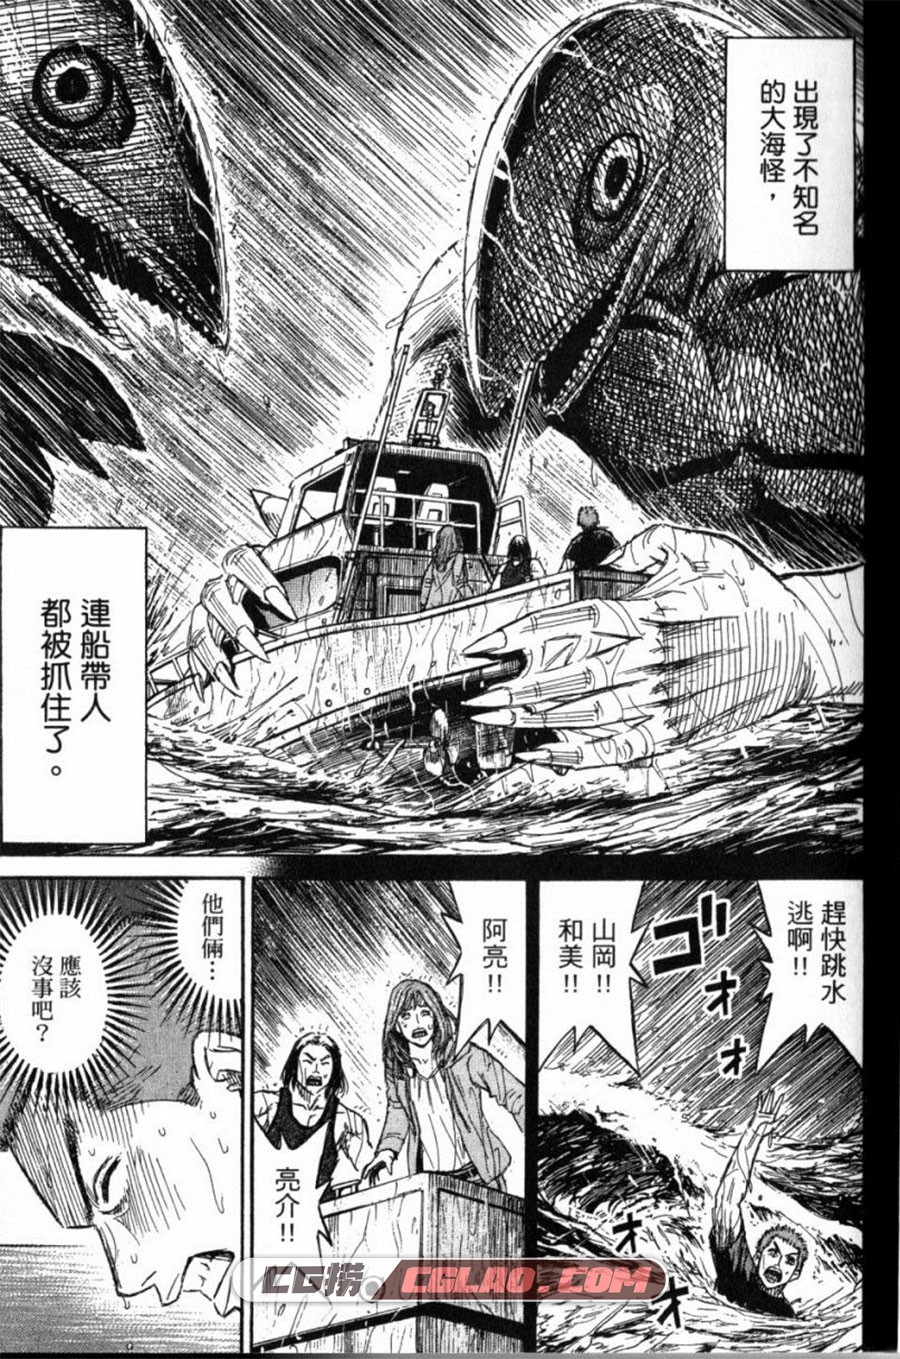 彼岸岛2 最后的47天 松本光司 1-16卷 恐怖漫画全集下载,第1卷_0004.jpg